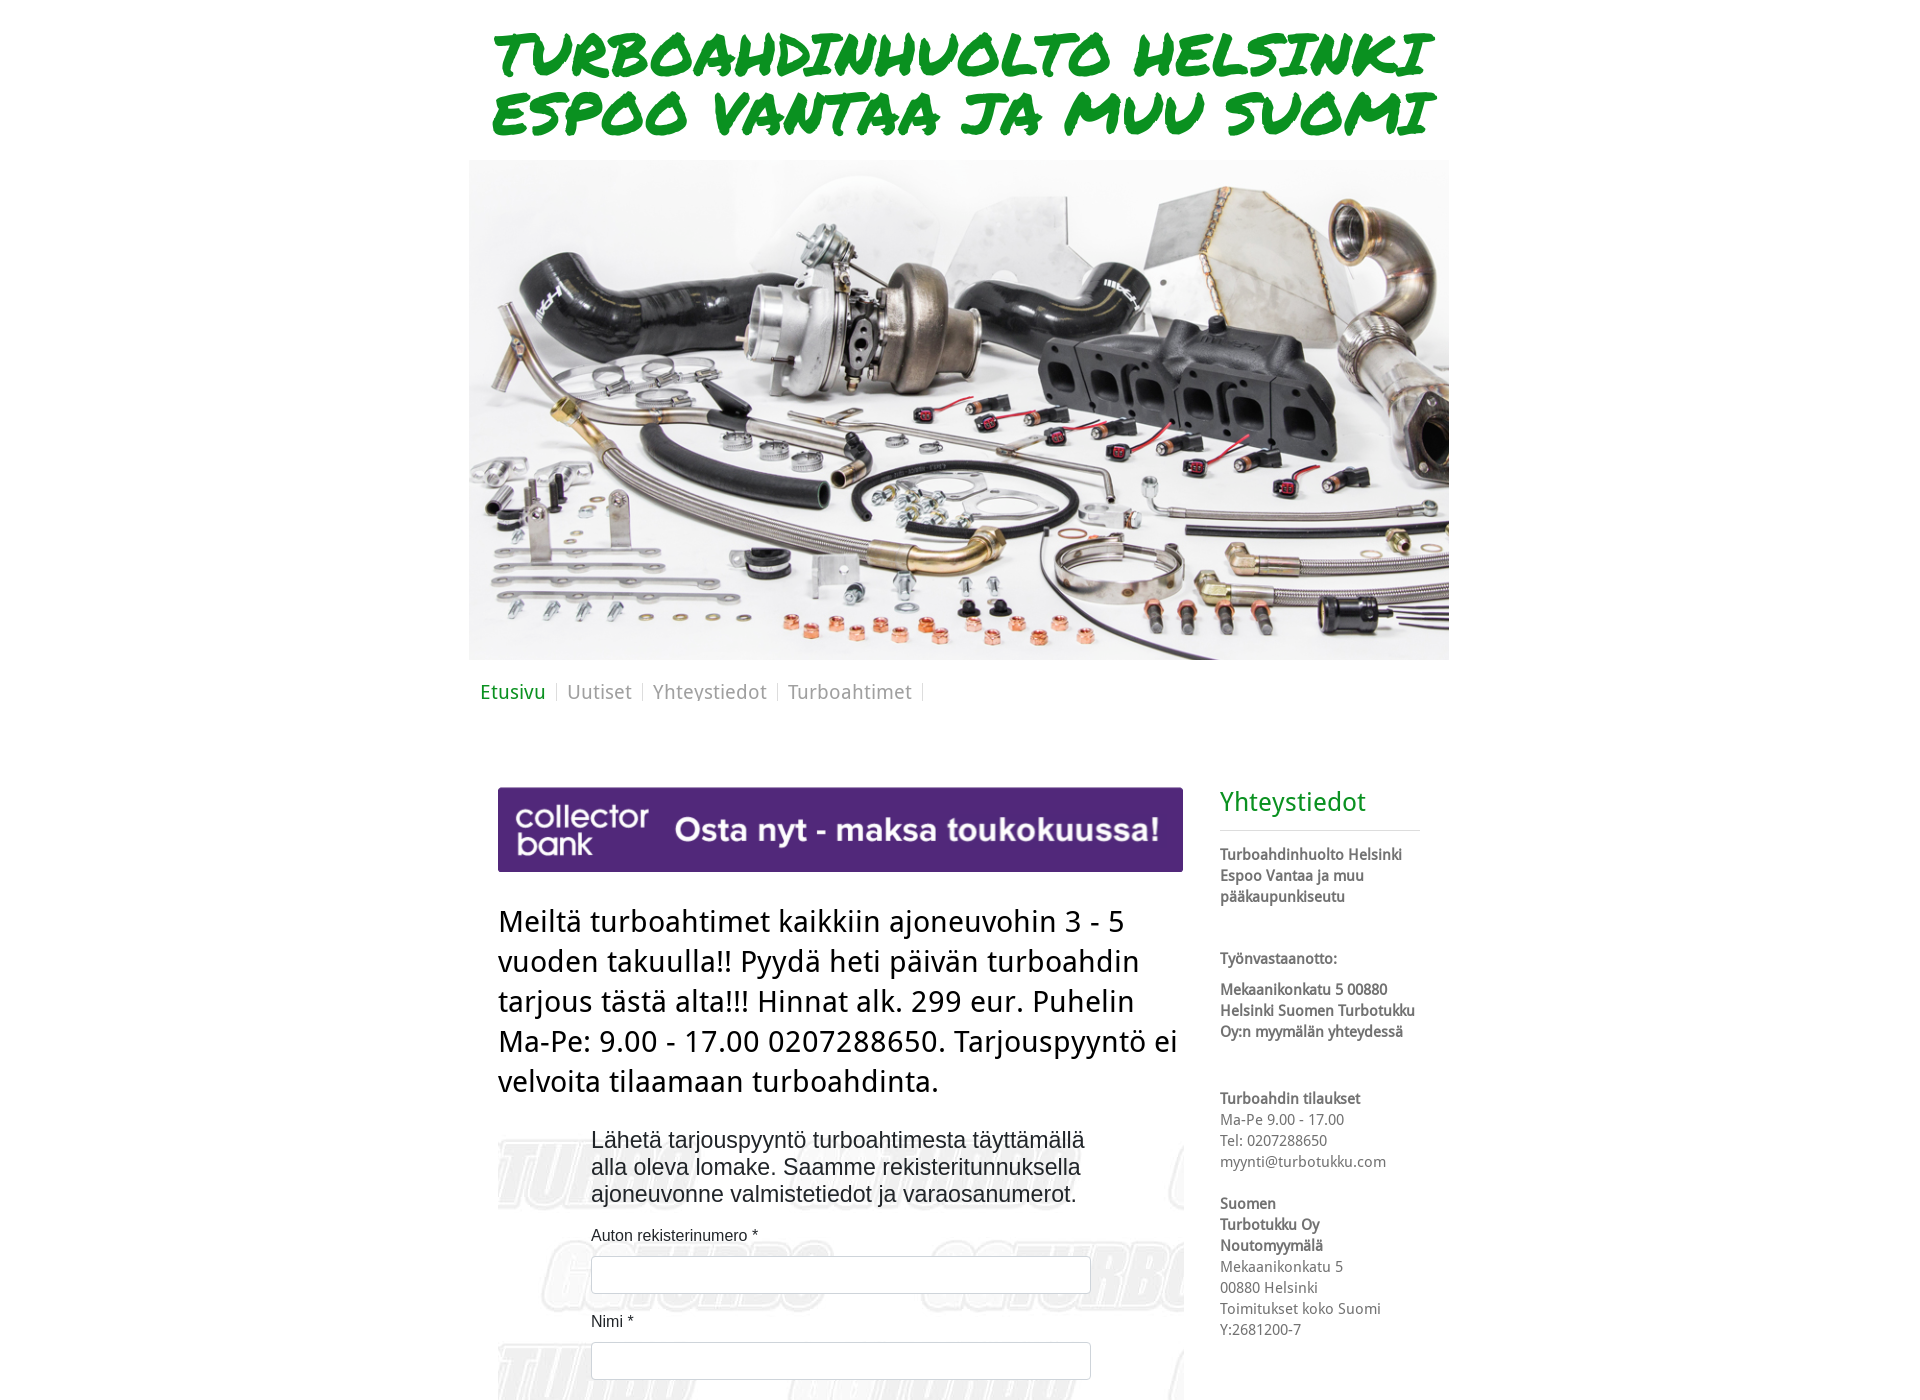 Skärmdump för turbohuoltovantaa.fi